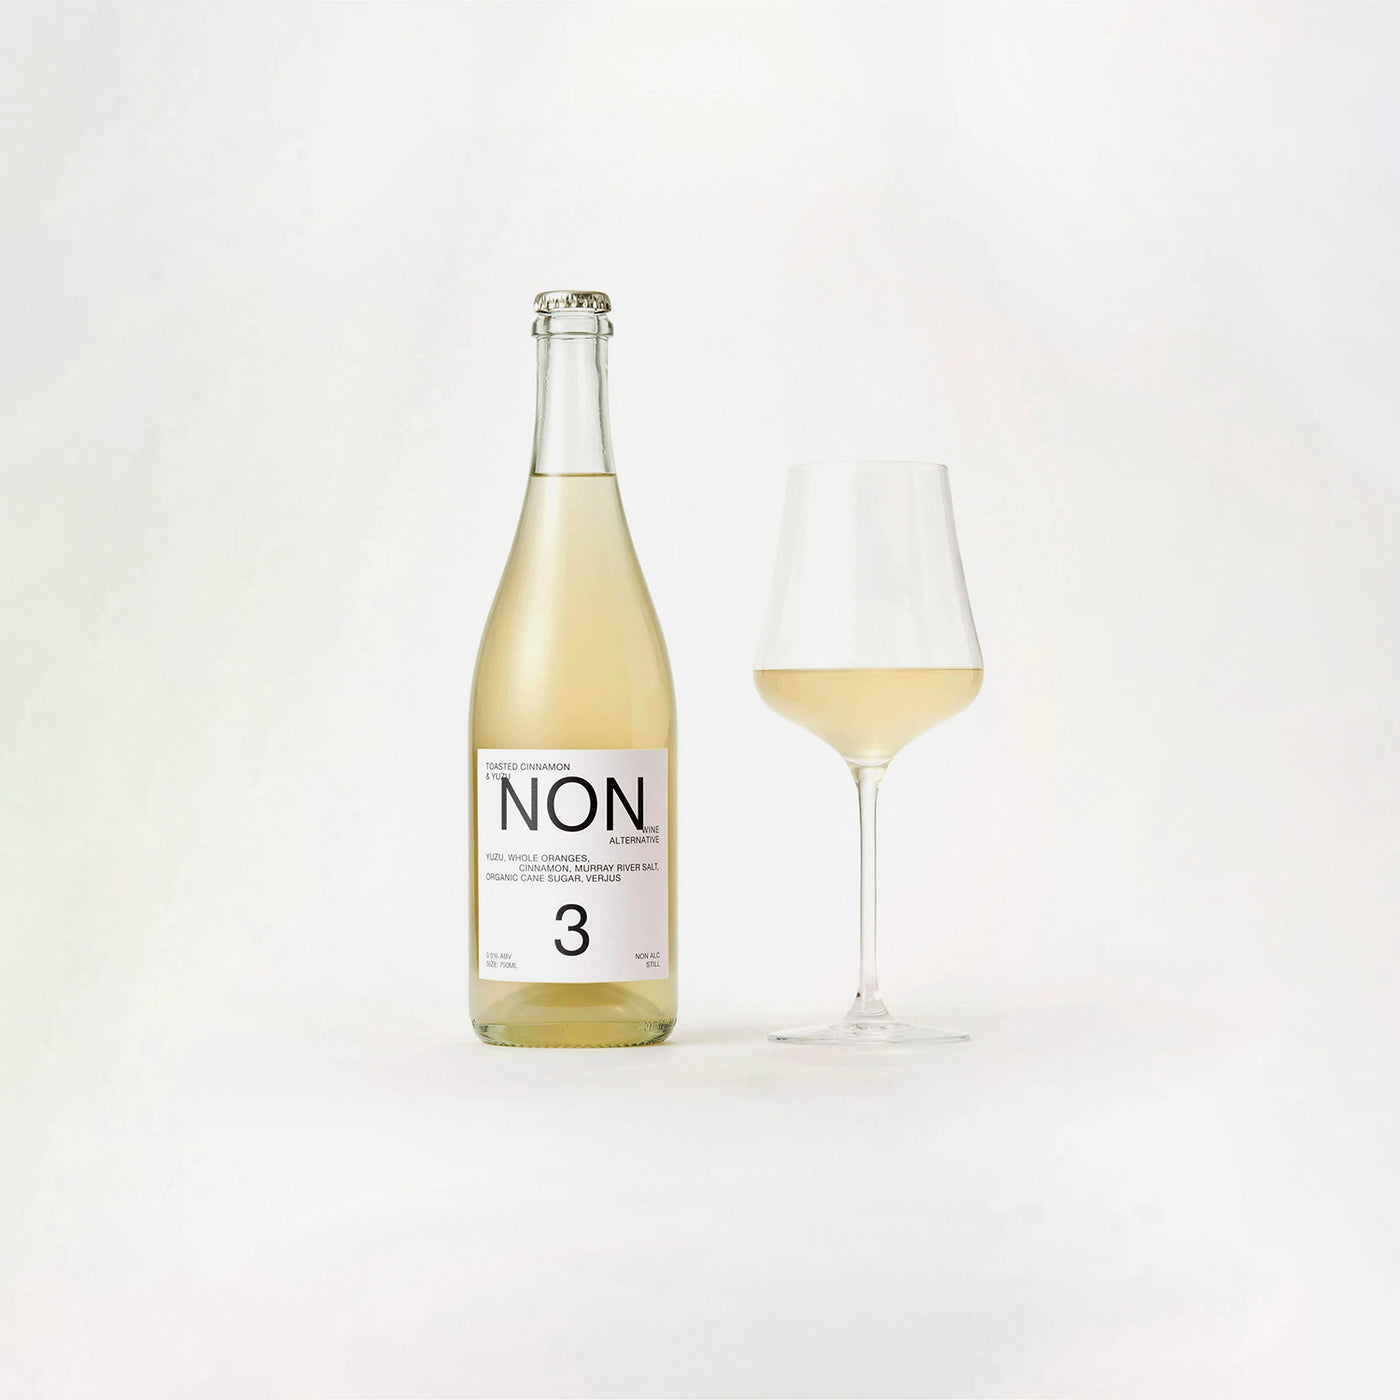 Non-alcoholic white wine alternative